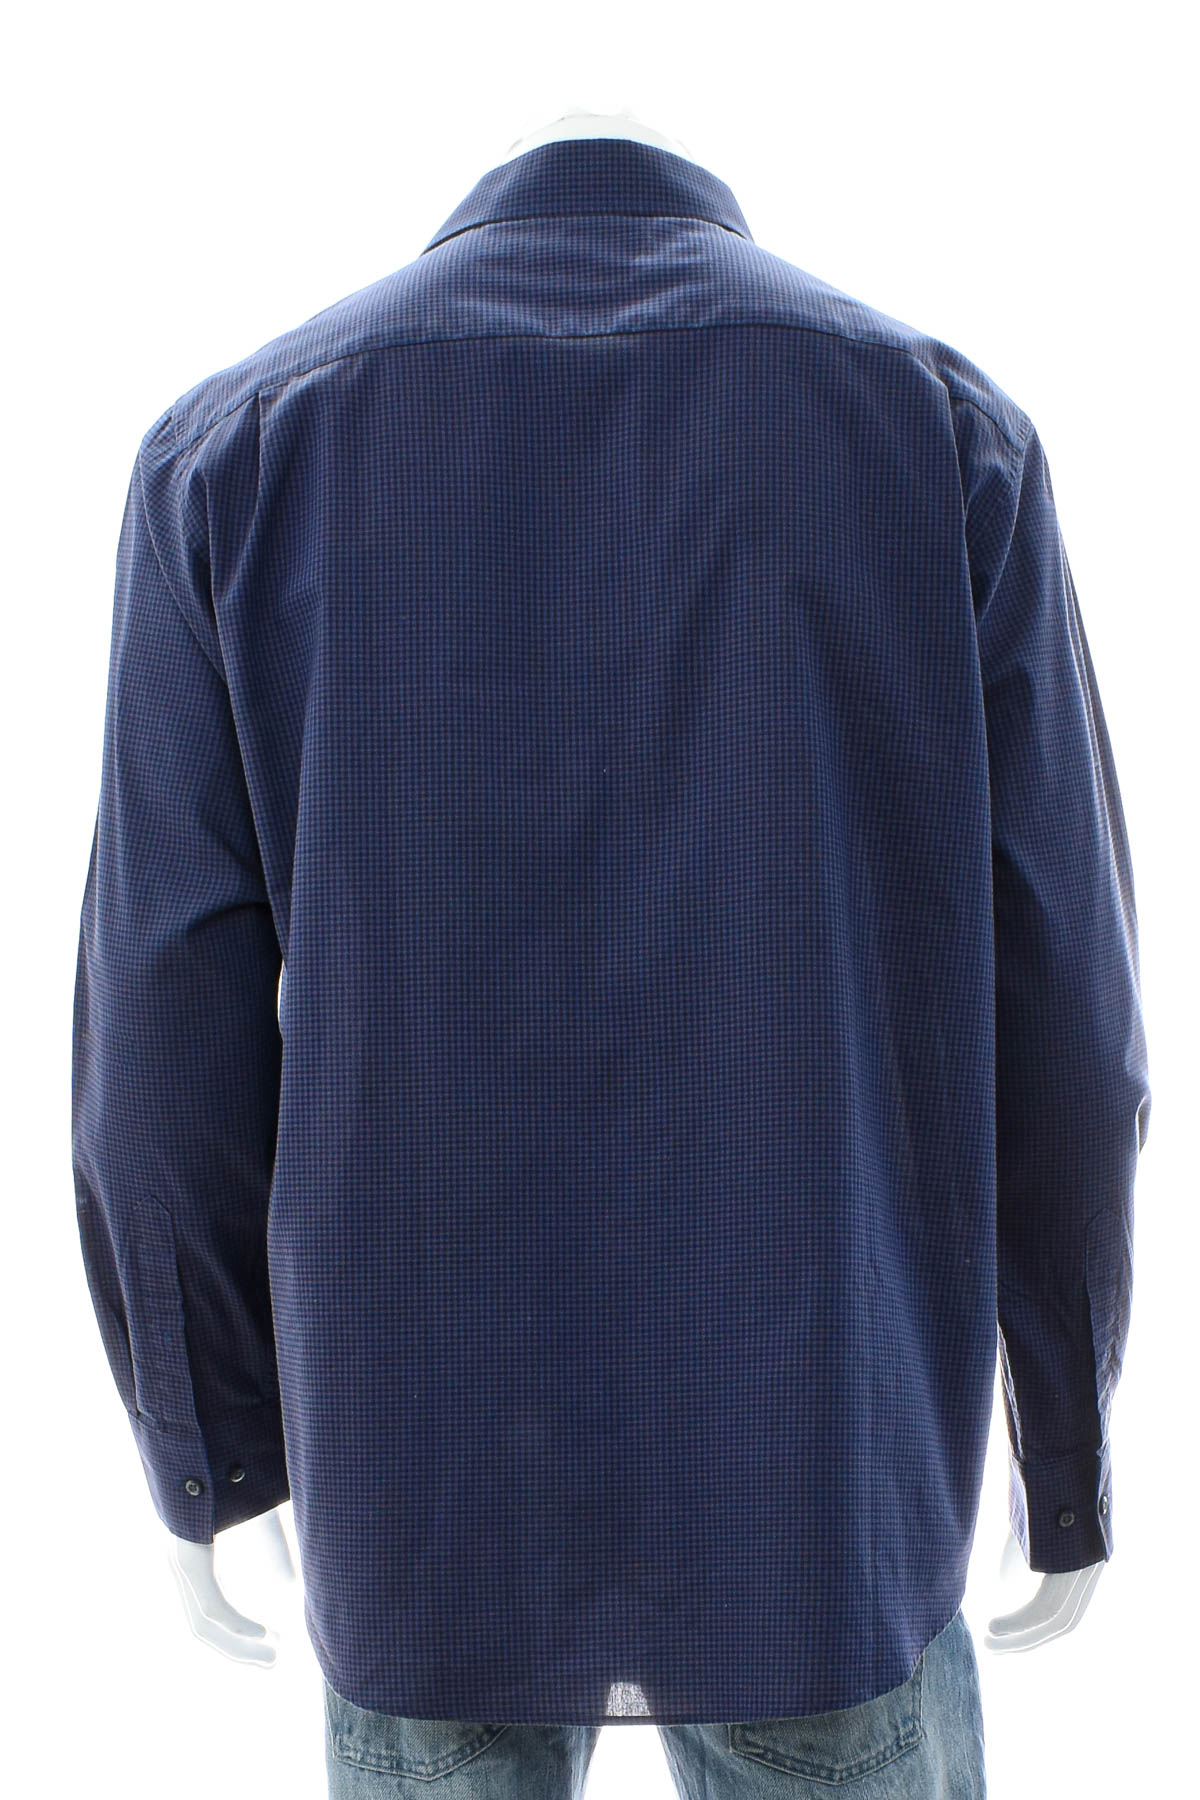 Ανδρικό πουκάμισο - WESTBURY - 1